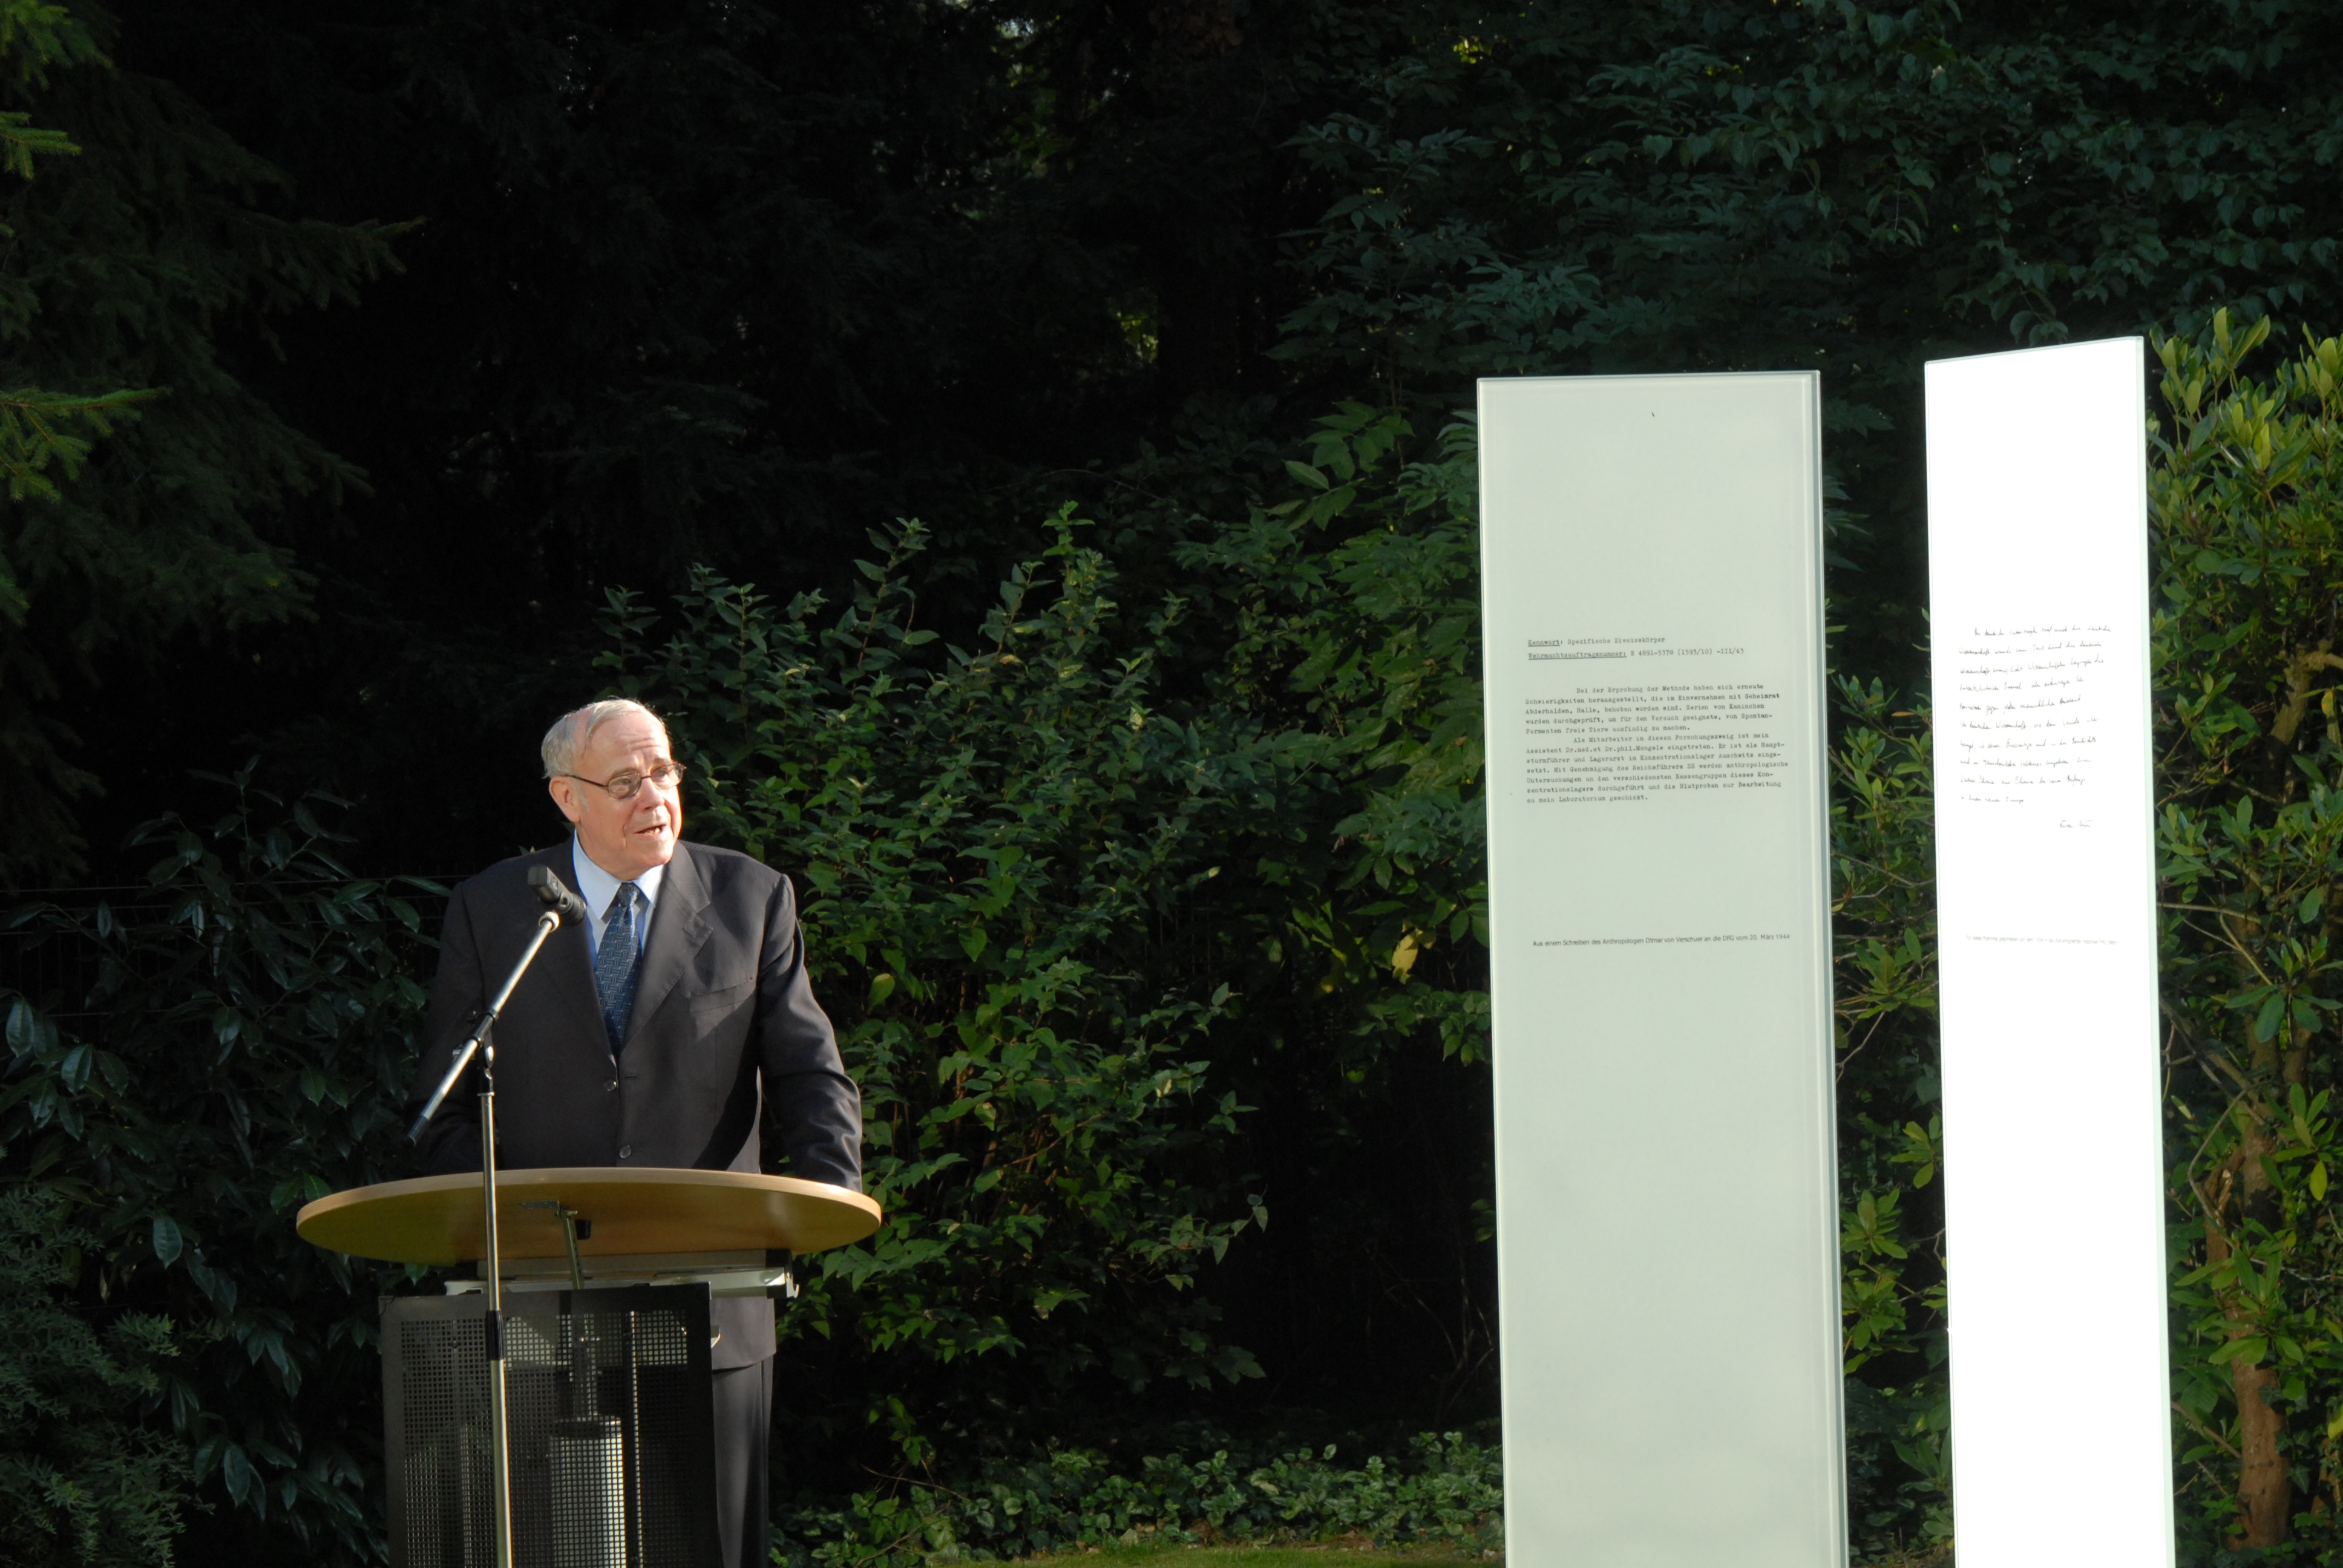 DFG President Ernst-Ludwig Winnacker speaking at the dedication of the memorial